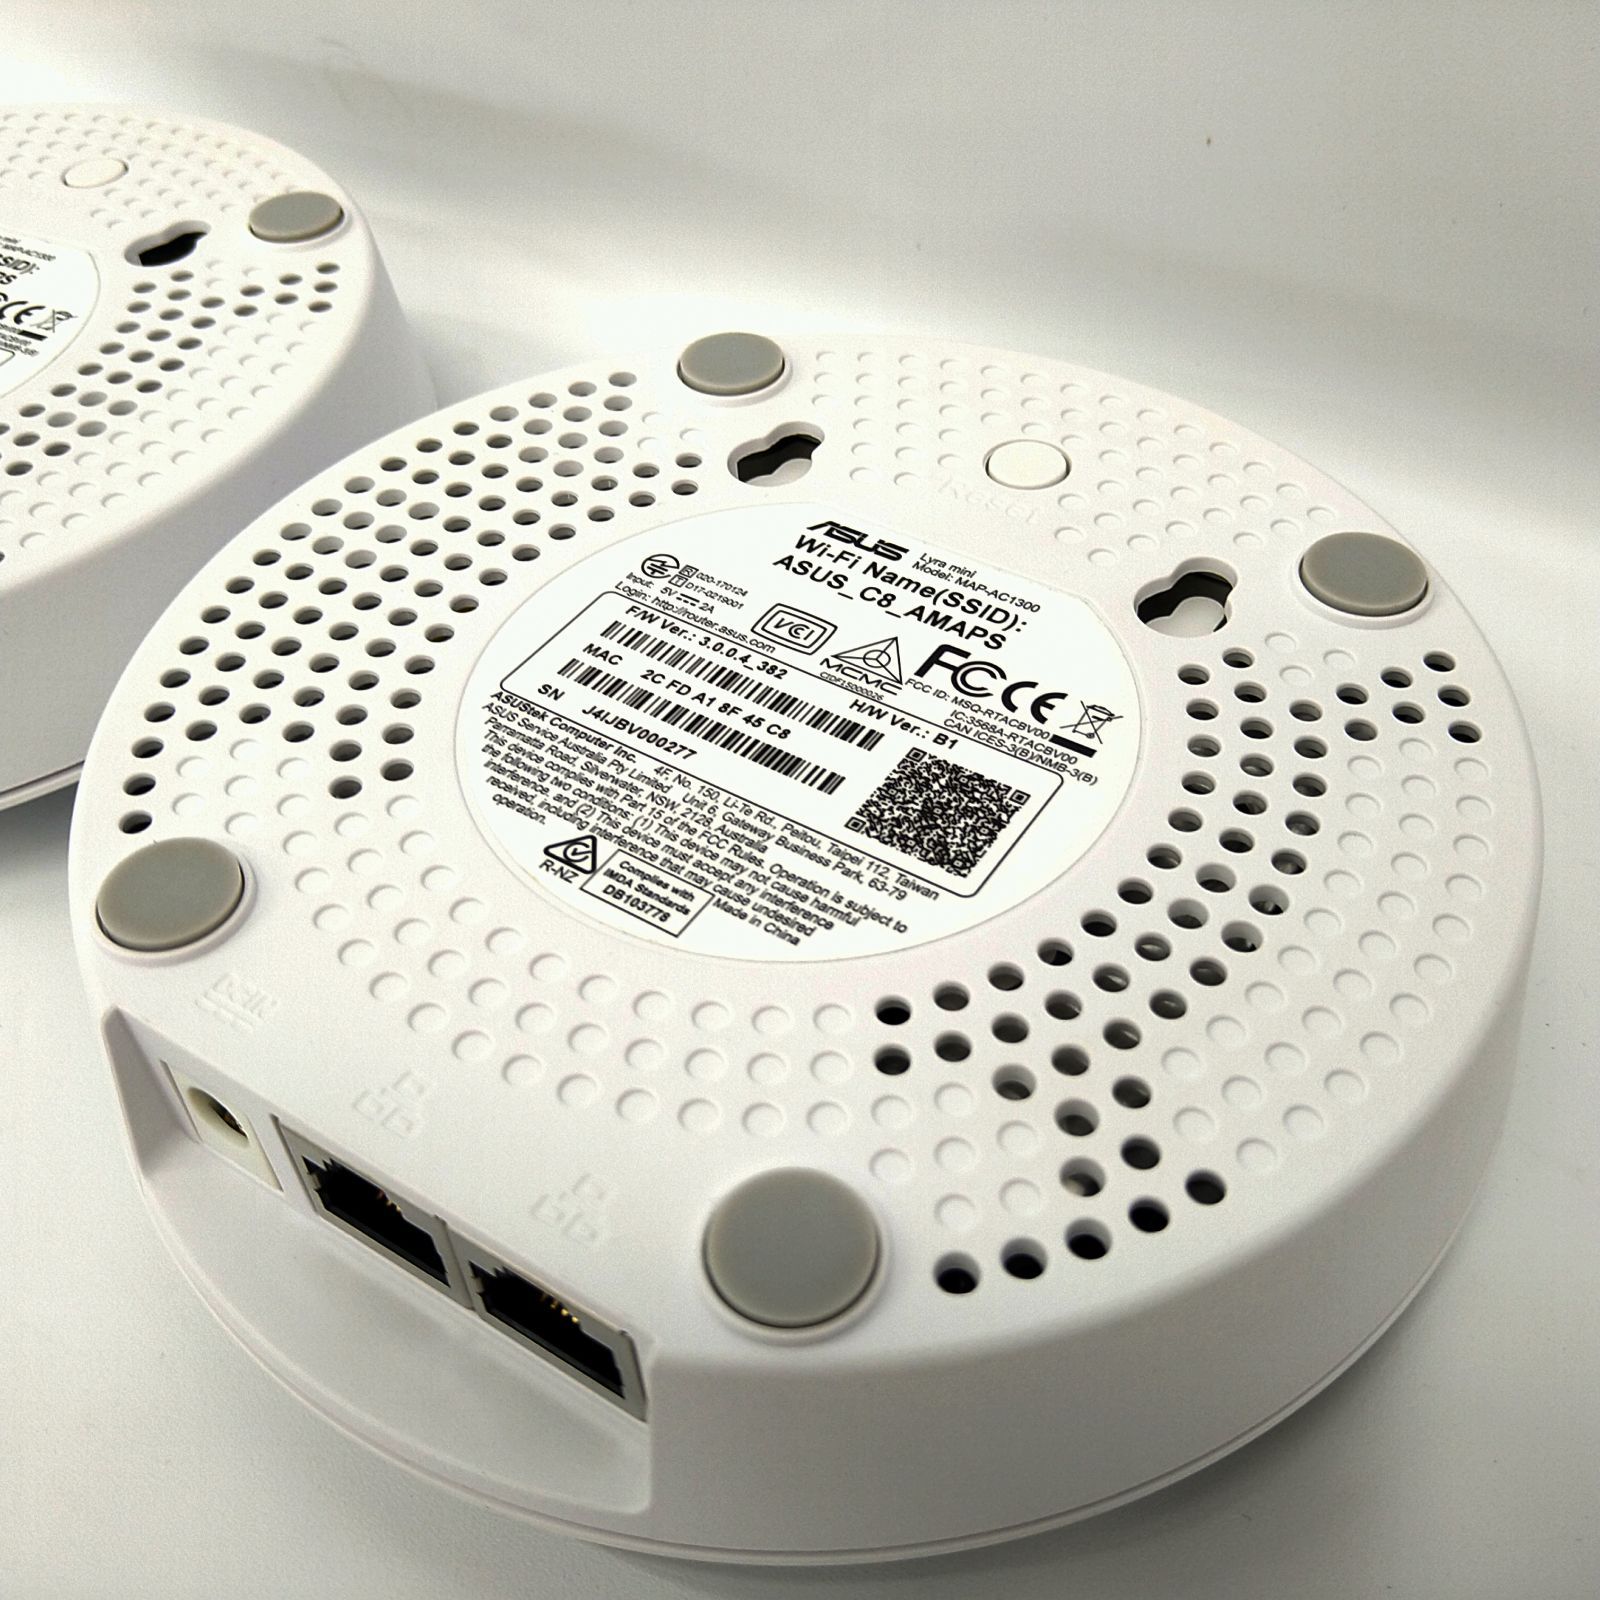 ASUS　エイスース　Lyra mini　無線LAN (Wi-Fi)ルーターPC周辺機器